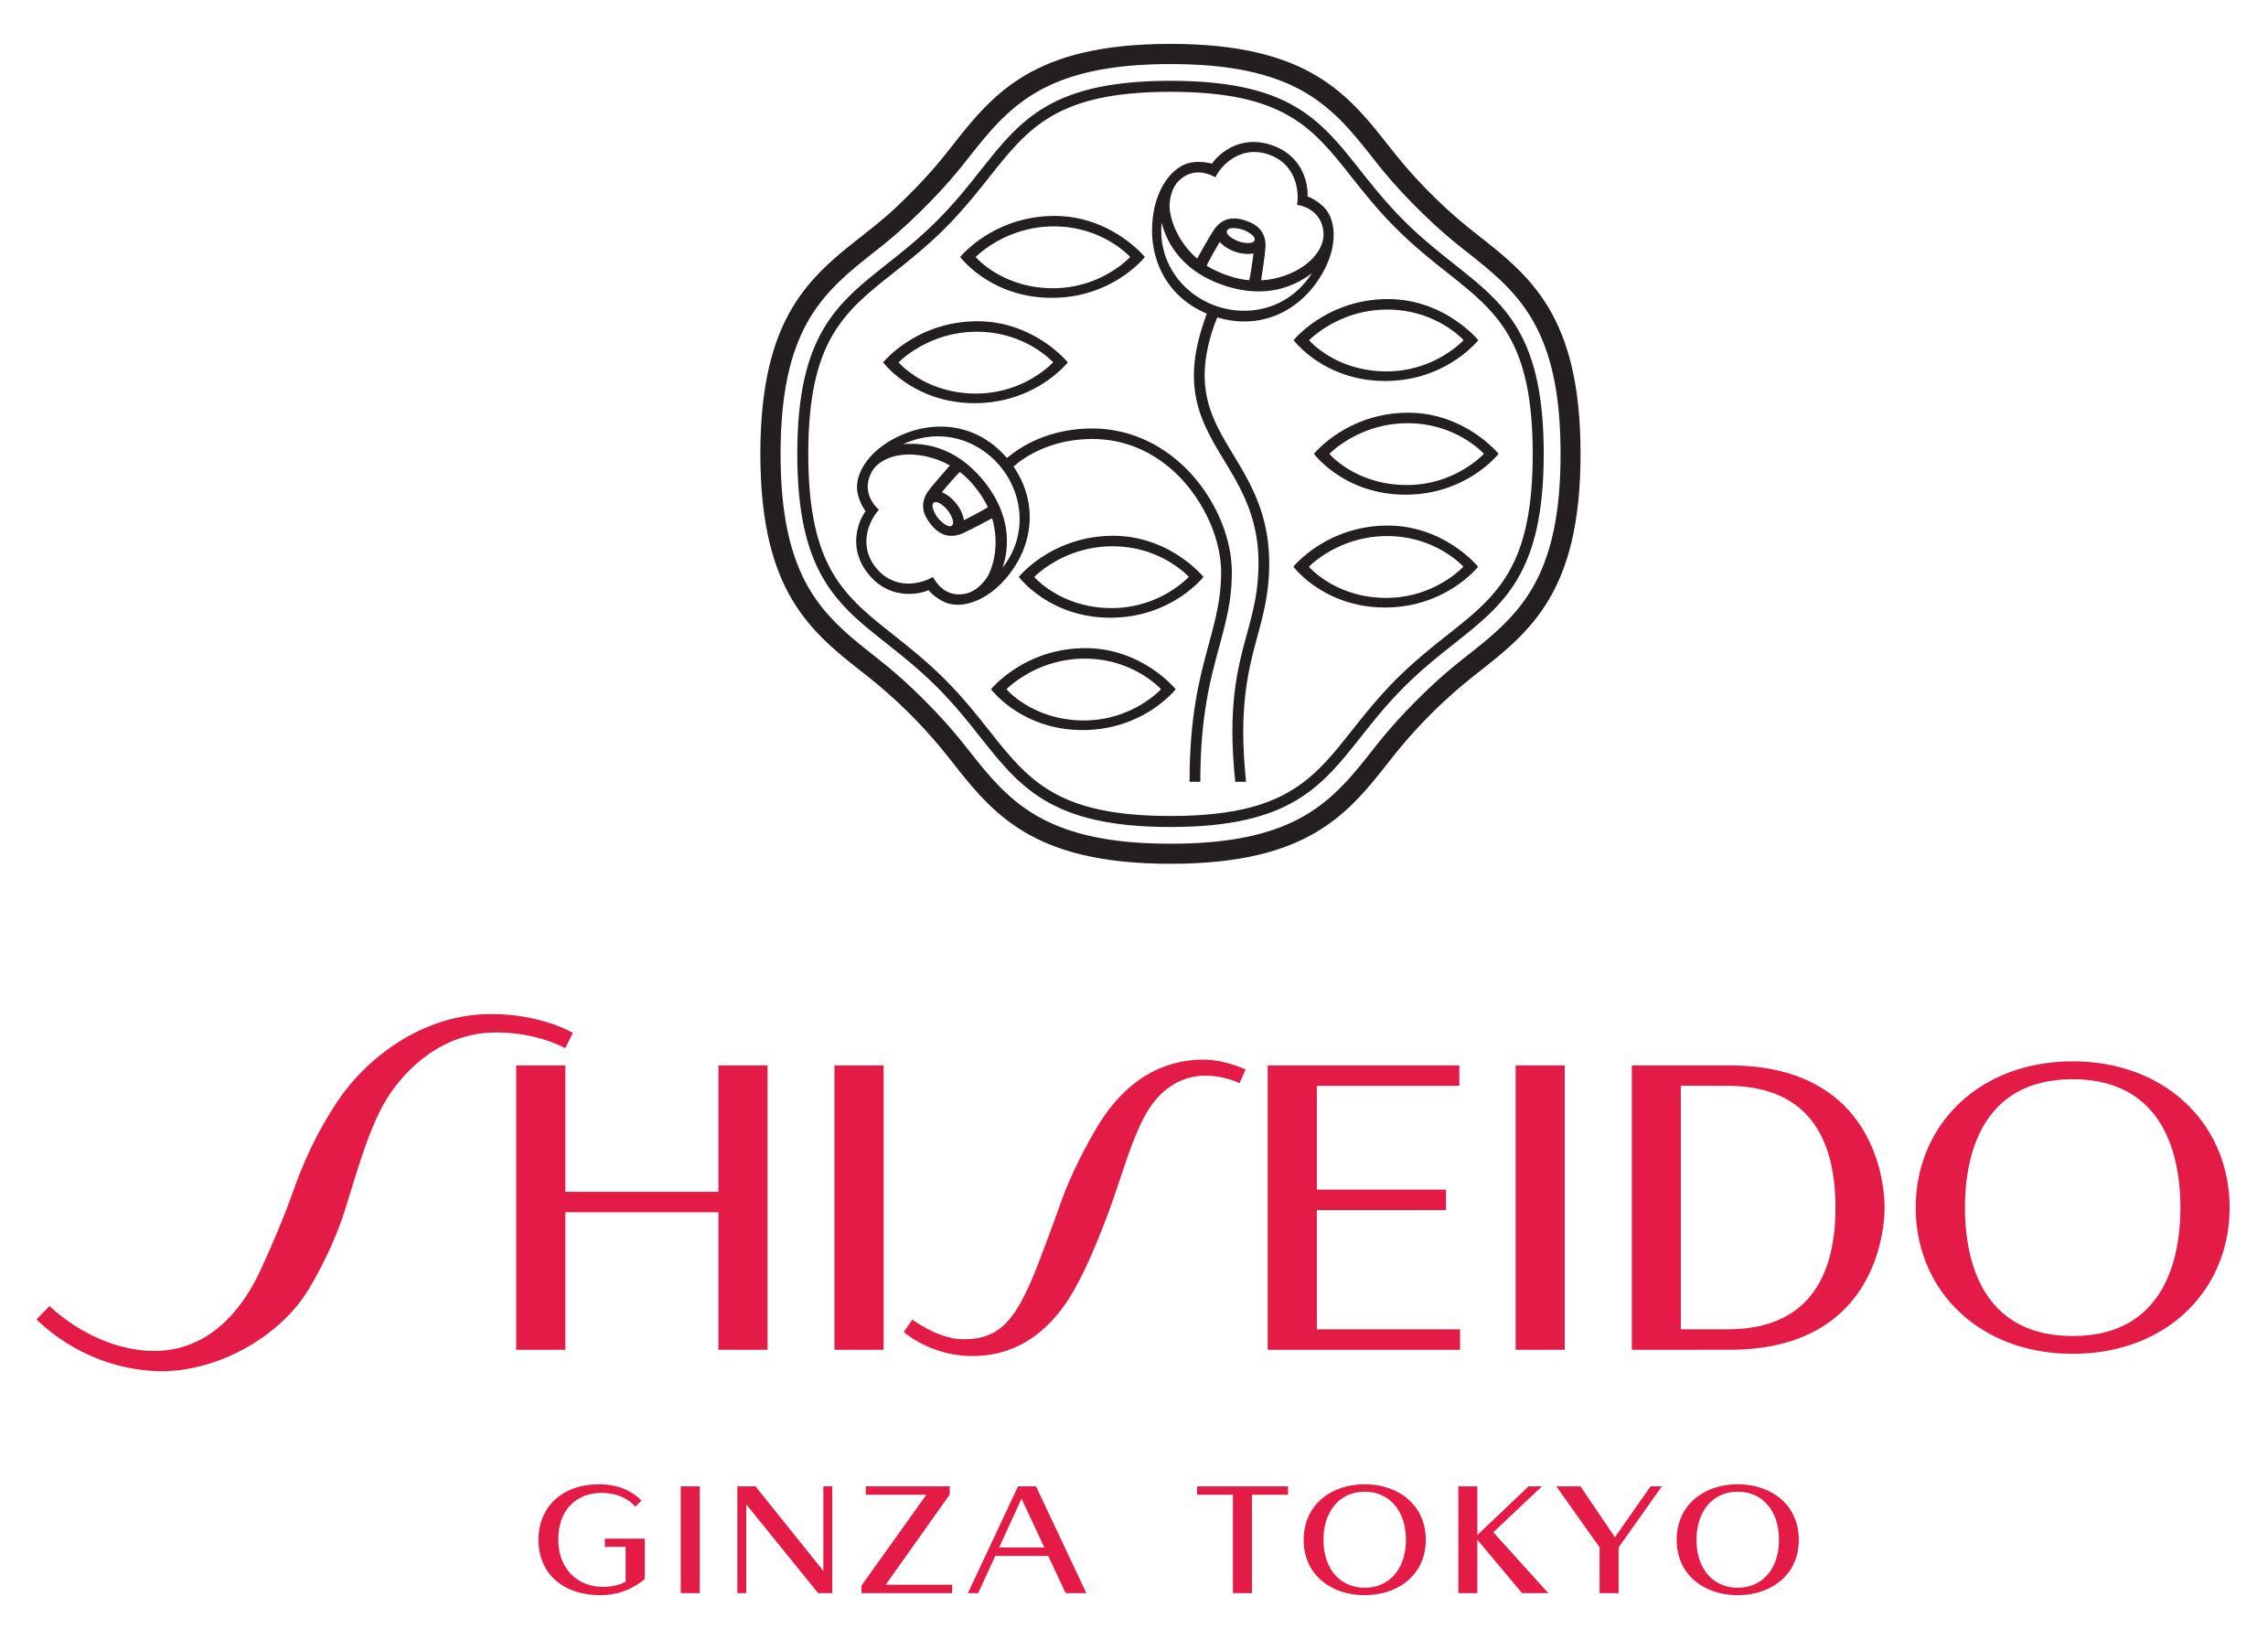 Shisheido Logo - Shiseido ginza tokyo Logos